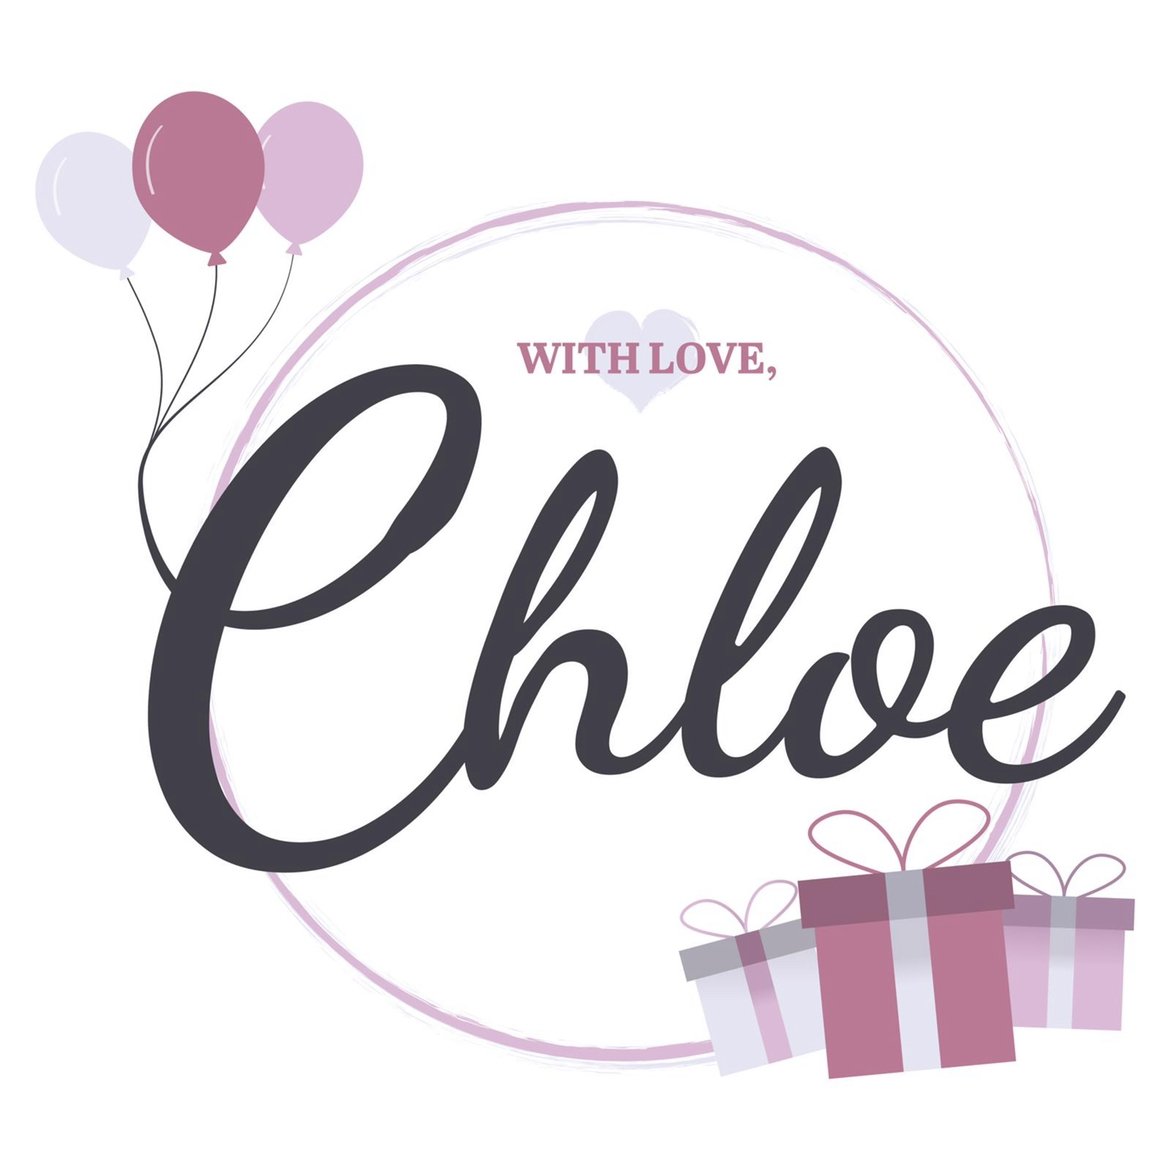 With Love, Chloe X